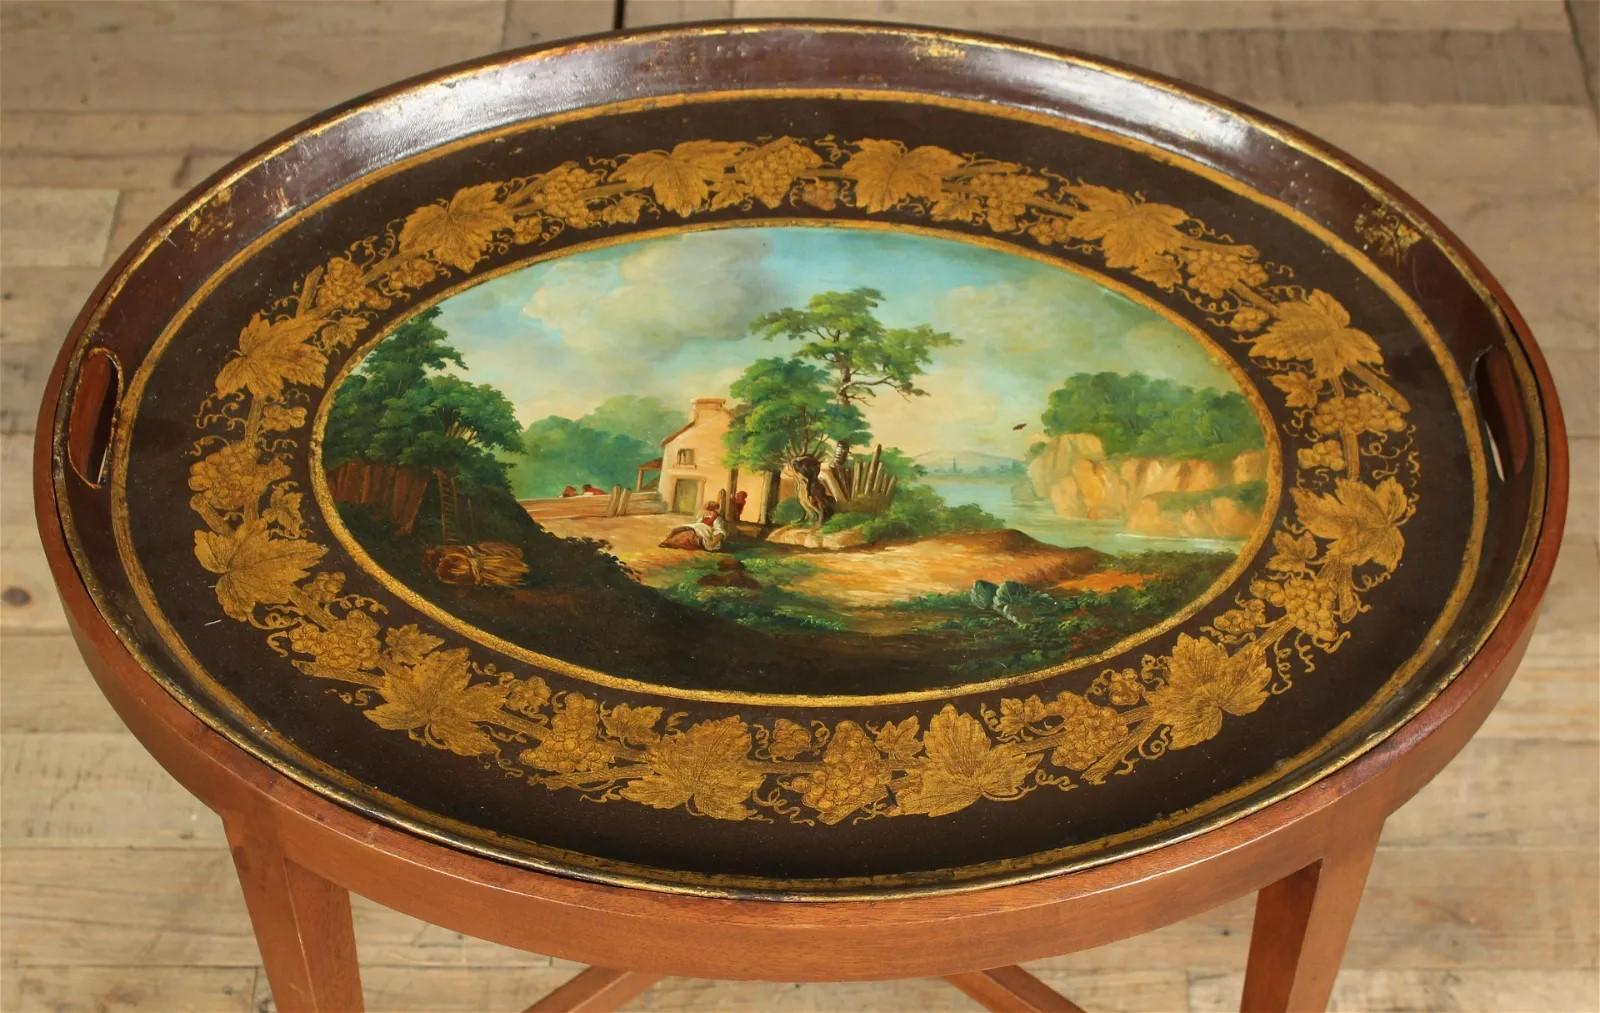 Un plateau en tôle français du début du XIXe siècle, peint d'une scène Idyllique de style néoclassique, vers 1800. Le plateau a été équipé d'une base en bois fruitier personnalisée de fabrication ultérieure.